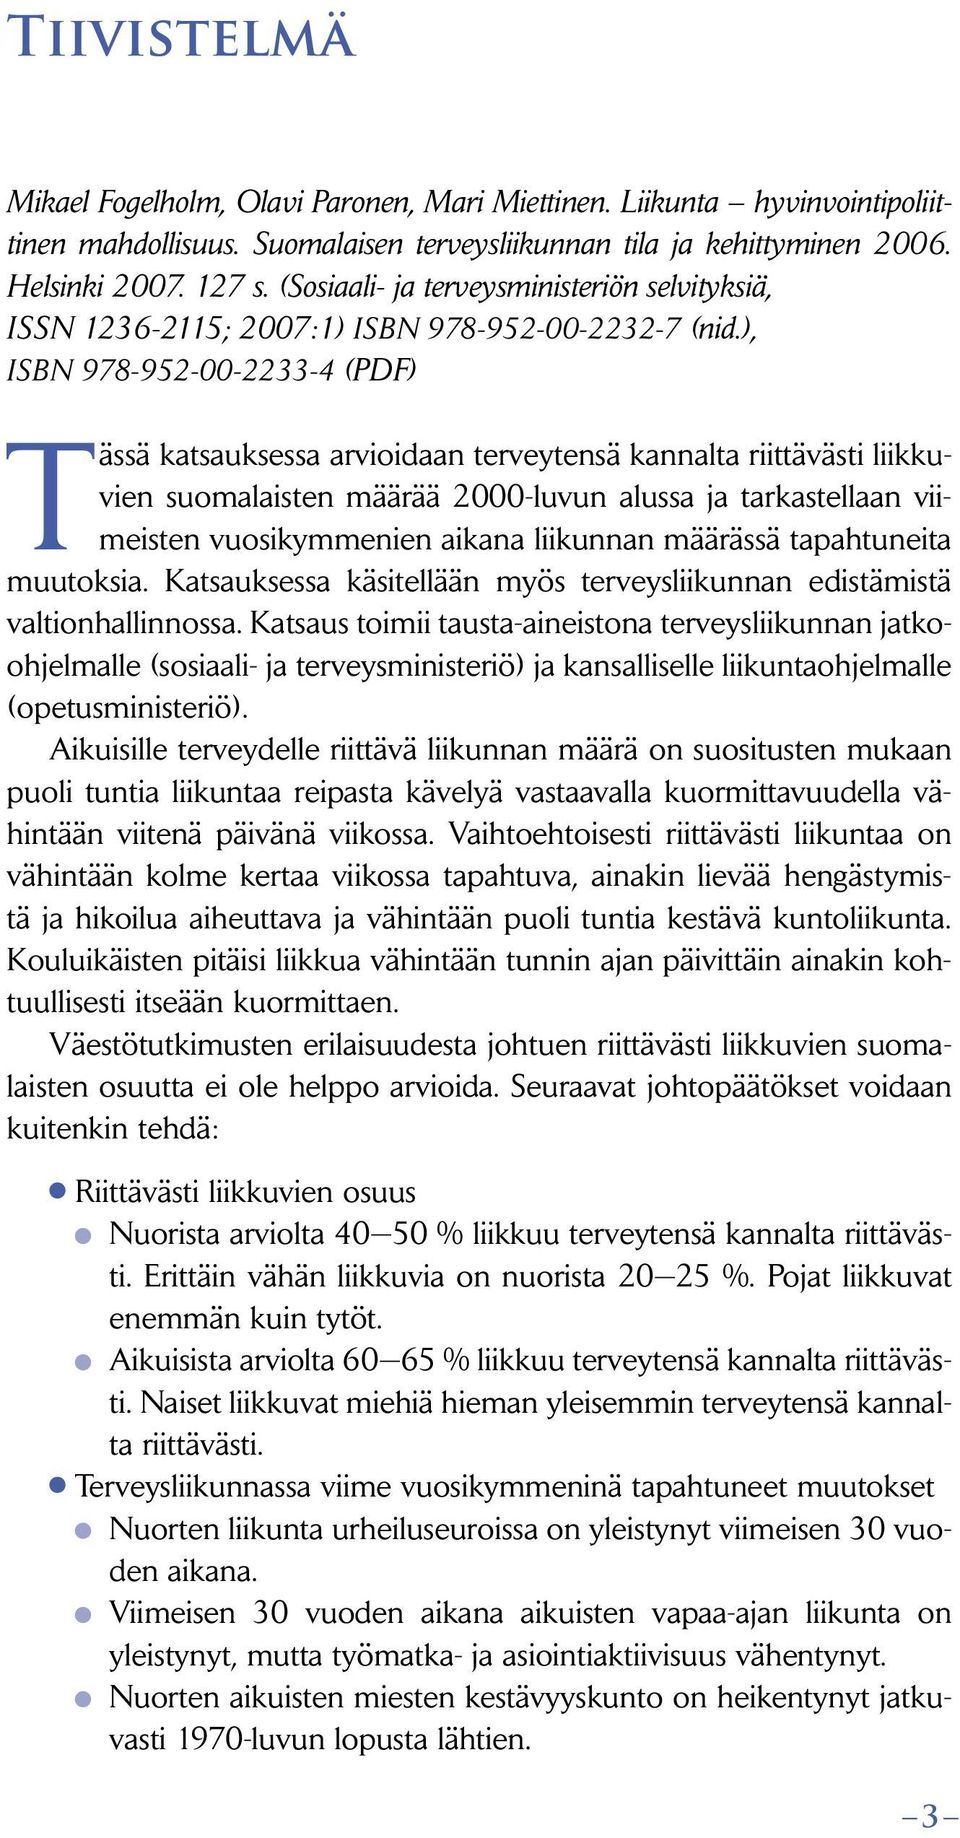 ), ISBN 978-952-00-2233-4 (PDF) Tässä katsauksessa arvioidaan terveytensä kannalta riittävästi liikkuvien suomalaisten määrää 2000-luvun alussa ja tarkastellaan viimeisten vuosikymmenien aikana